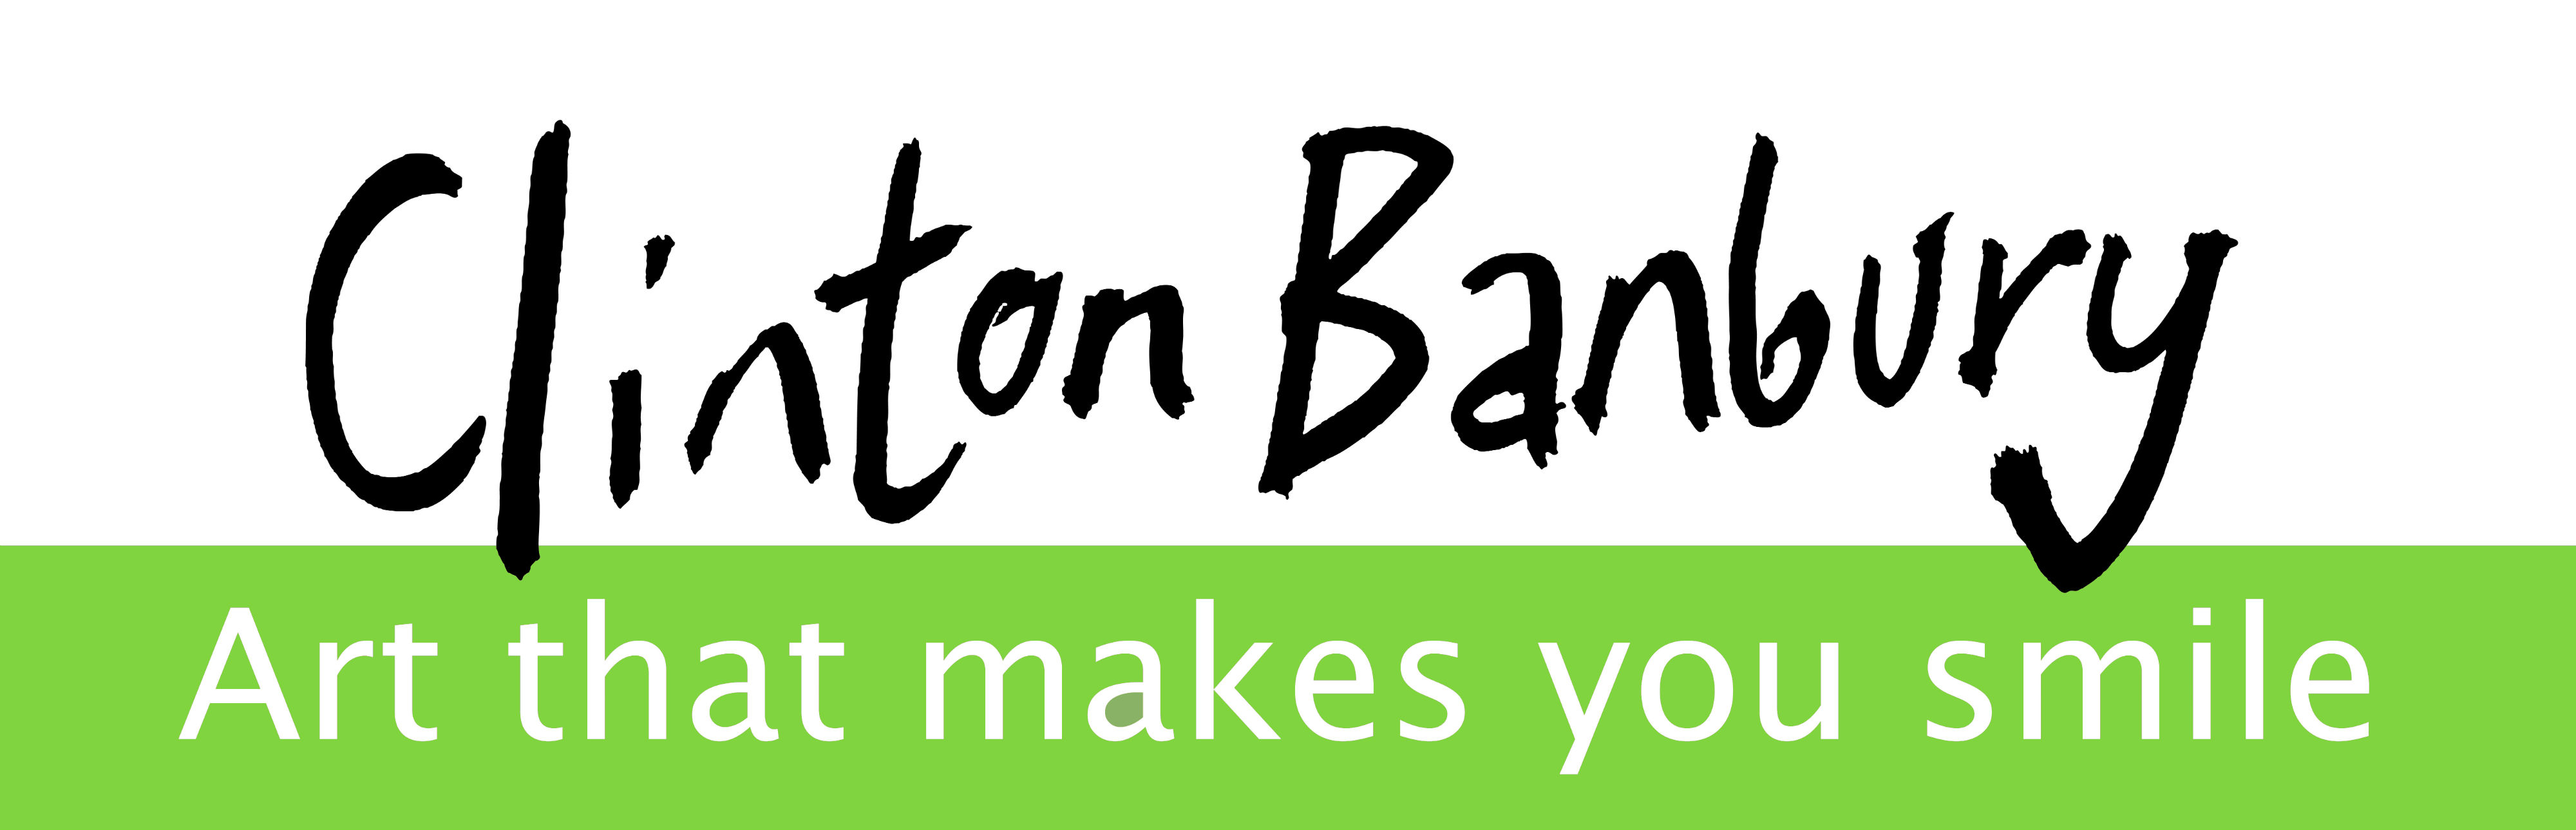 Clinton Banbury Logo